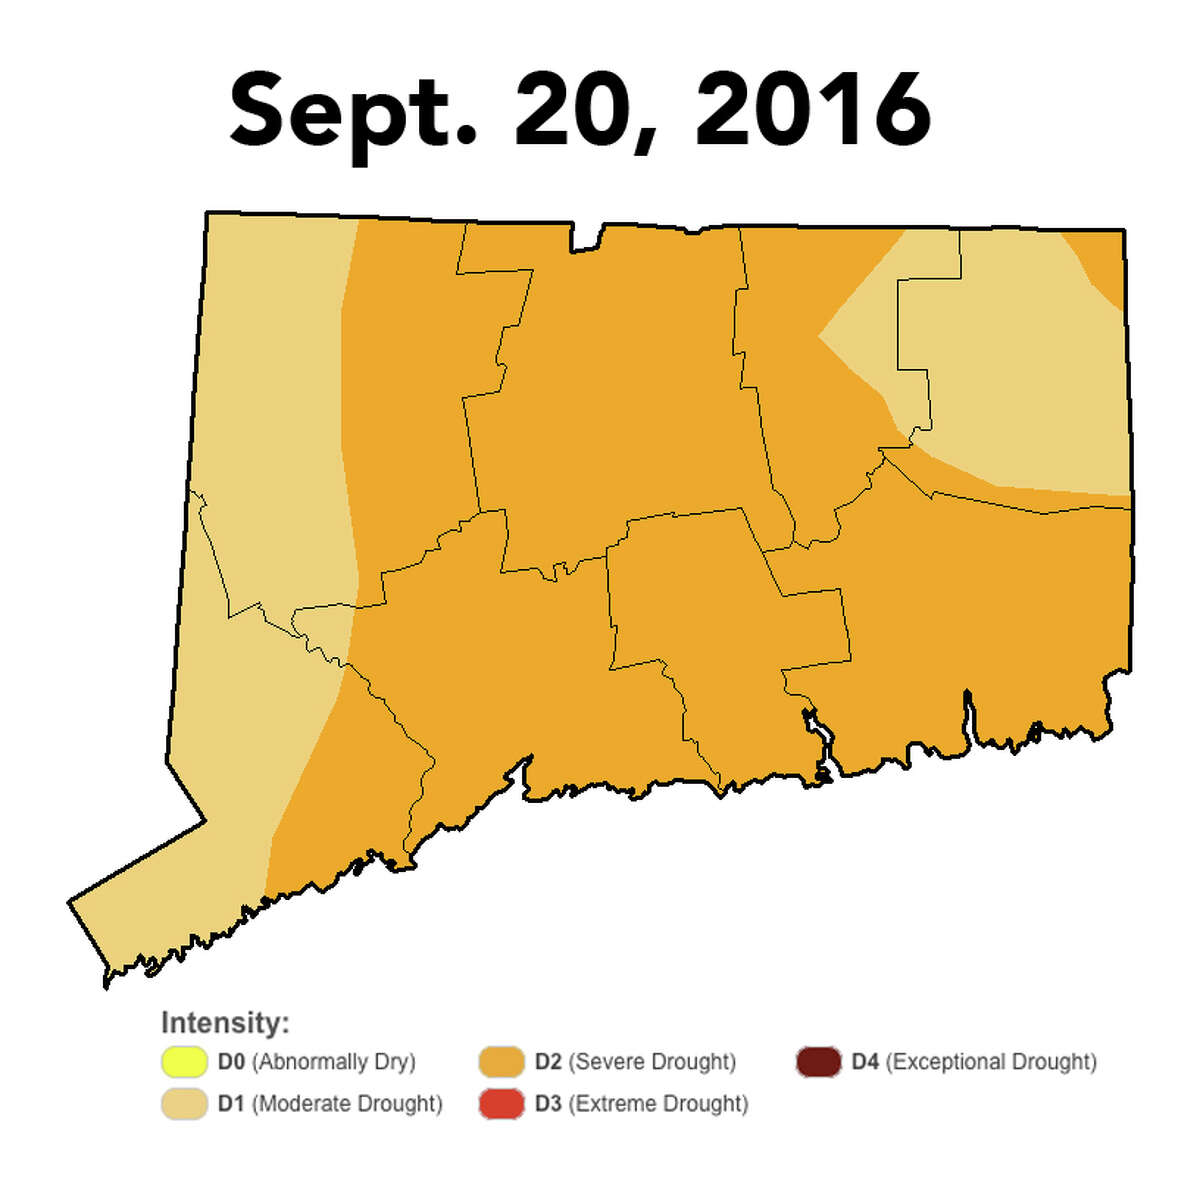 Drought conditions lessen across Connecticut